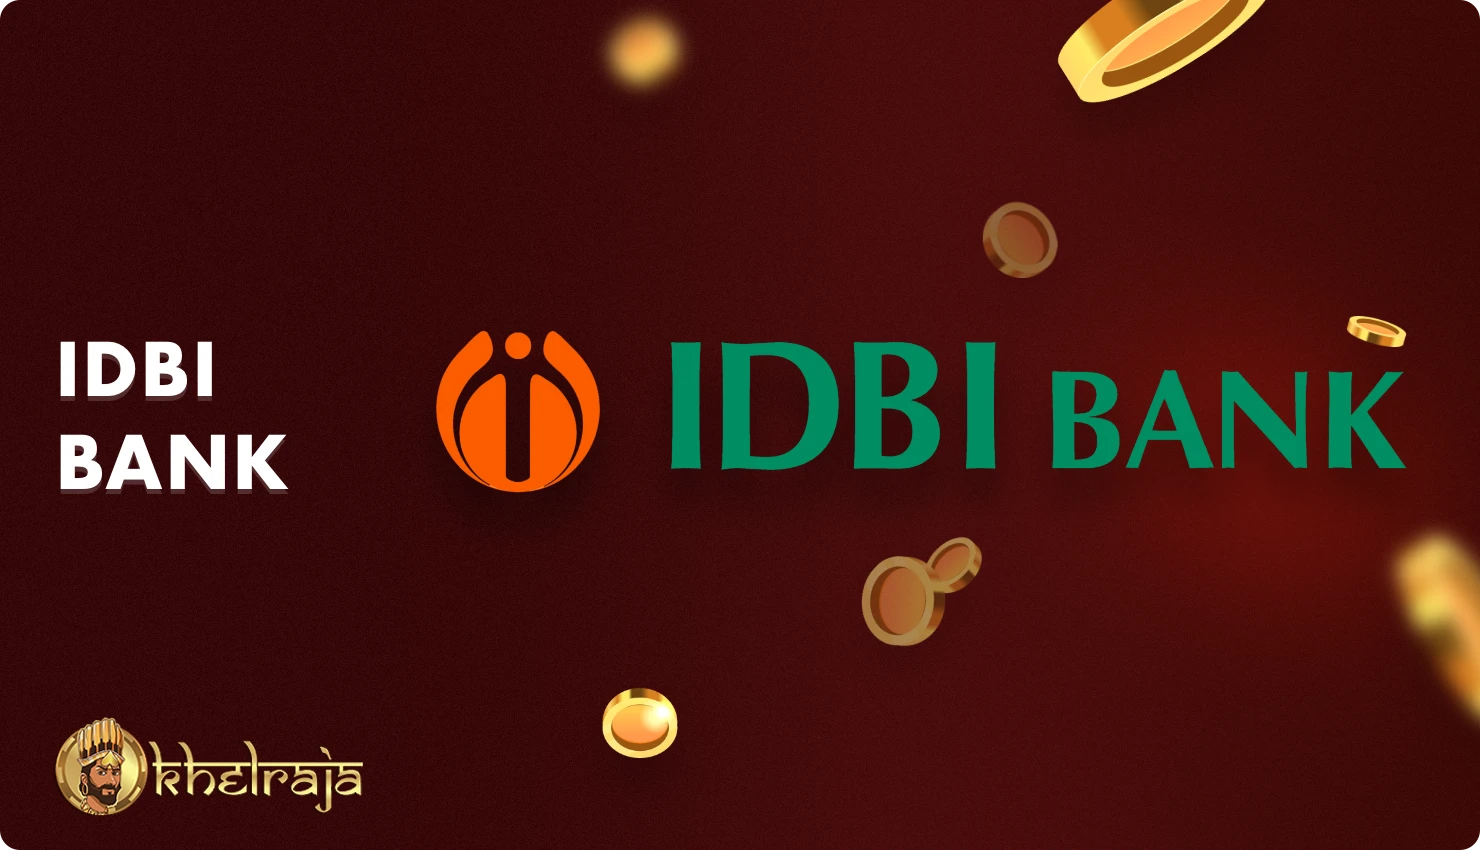 भारत के Khelraja उपयोगकर्ता वित्तीय लेनदेन के लिए आईडीबीआई बैंक का उपयोग कर सकते हैं